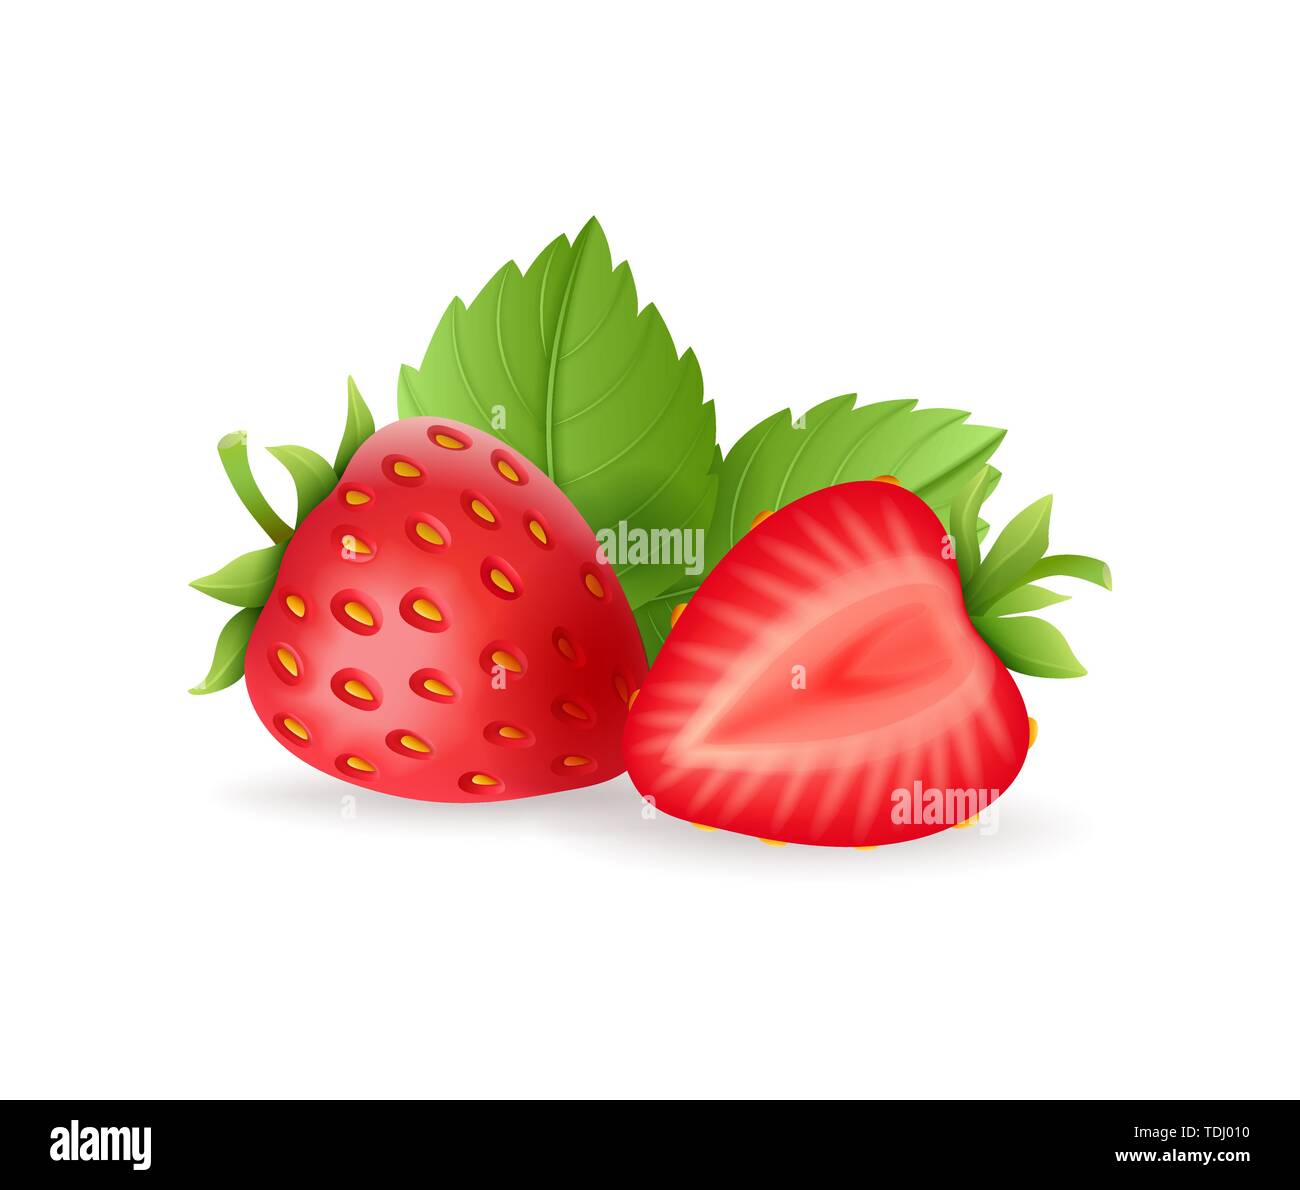 Jeu de fraises sucrées réaliste avec des feuilles vertes, petits fruits rouges frais, isolé sur fond blanc vector illustration. Illustration de Vecteur